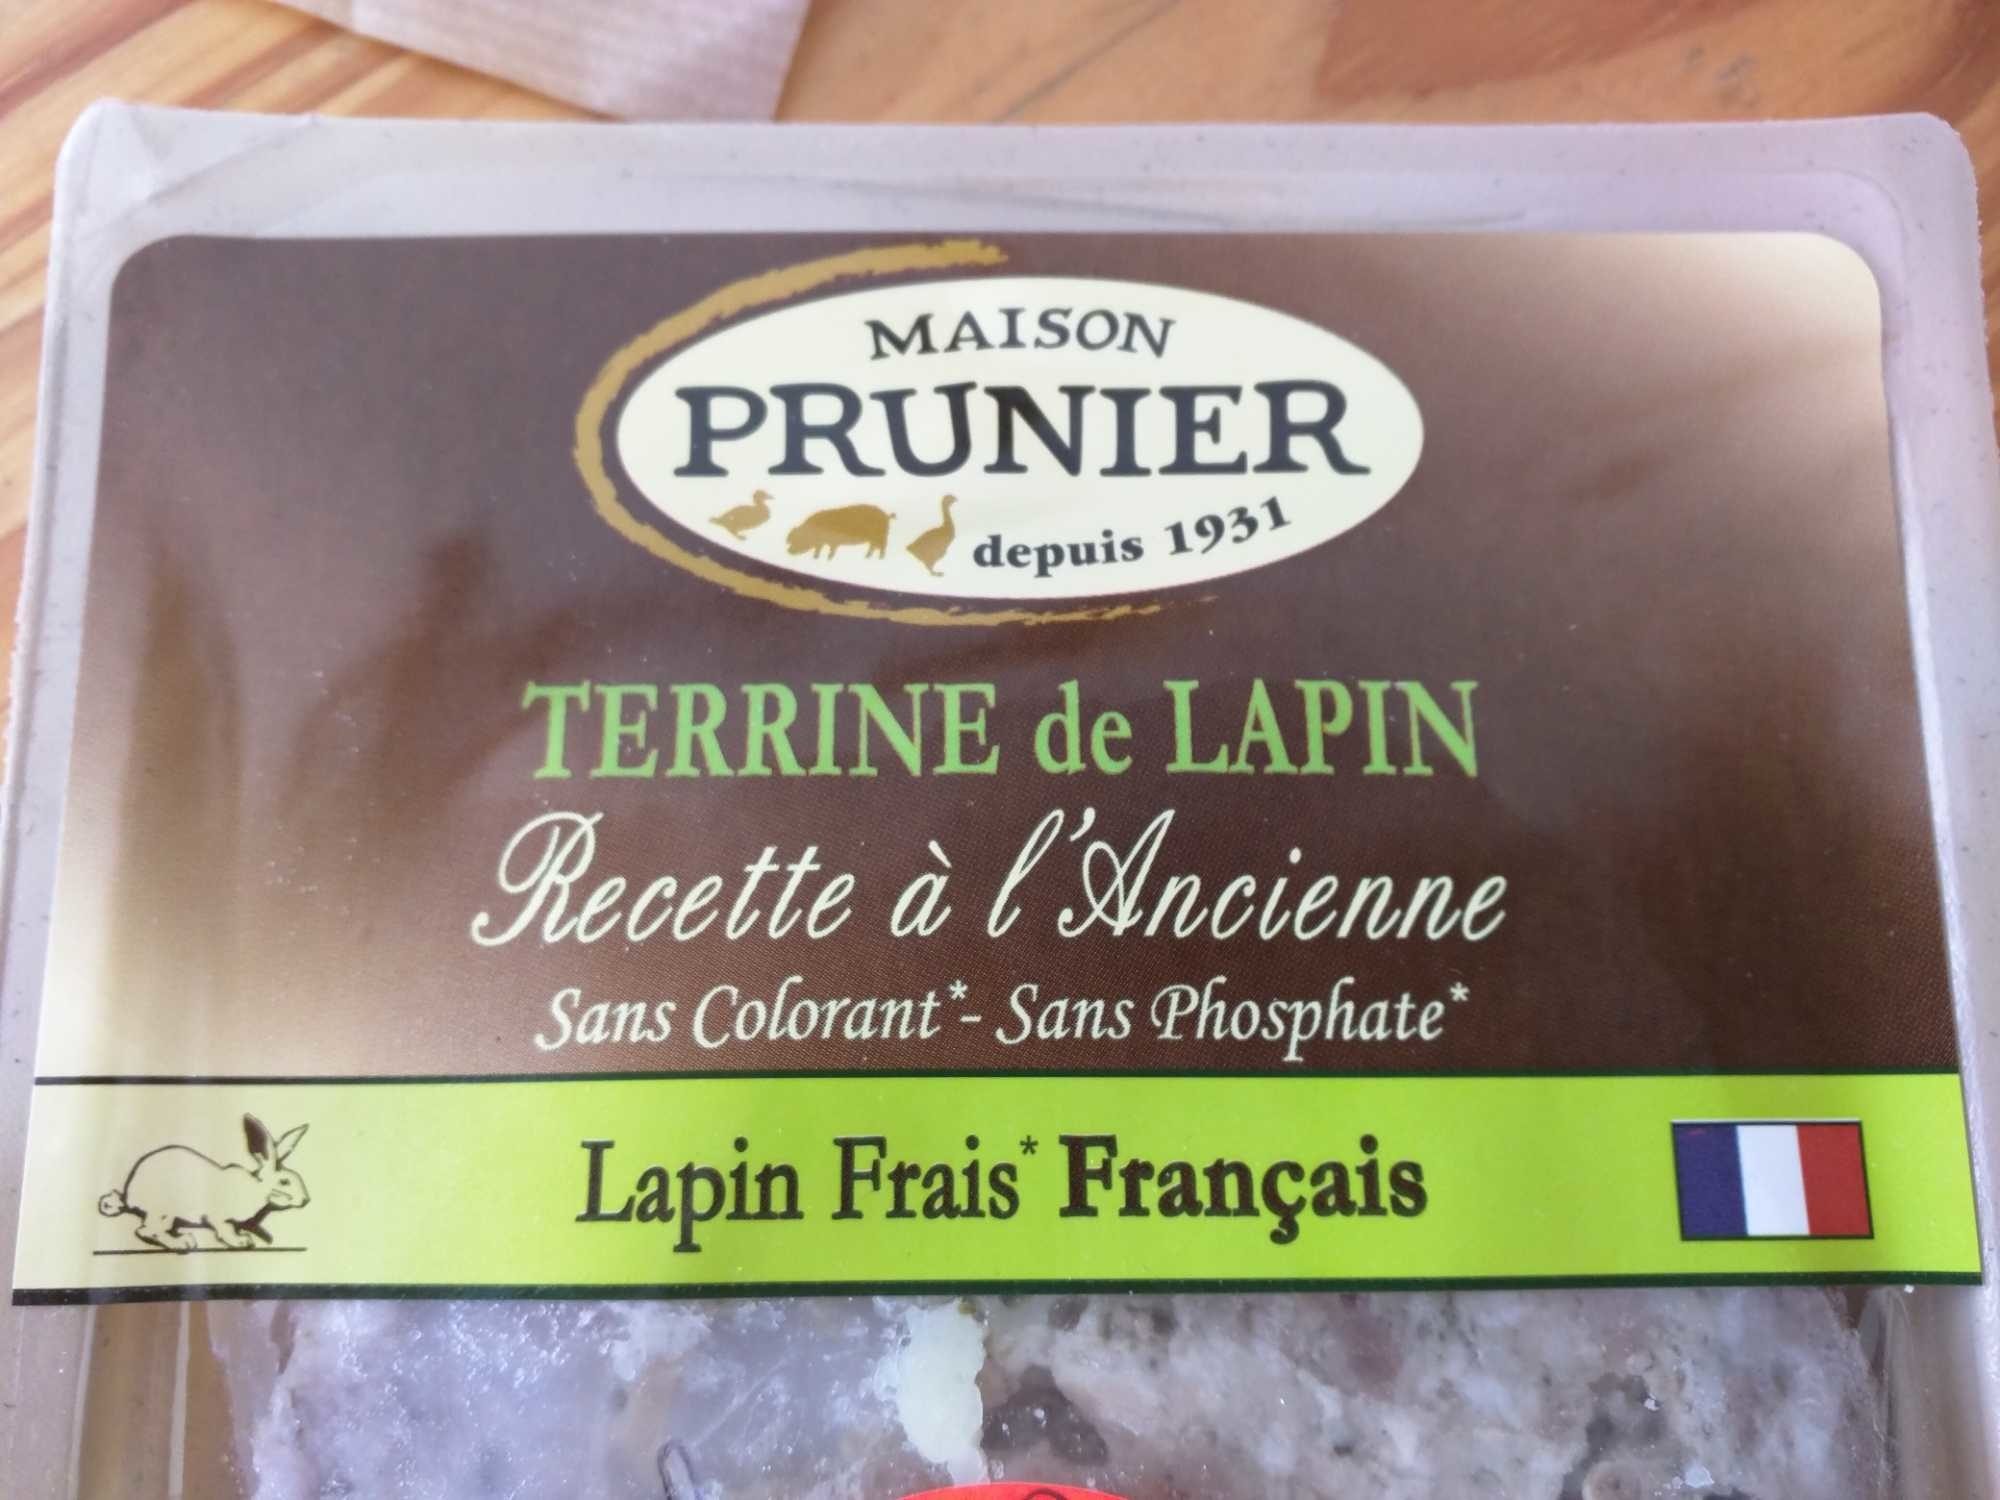 Terrine de Lapin - Recette à l'Ancienne - Product - fr